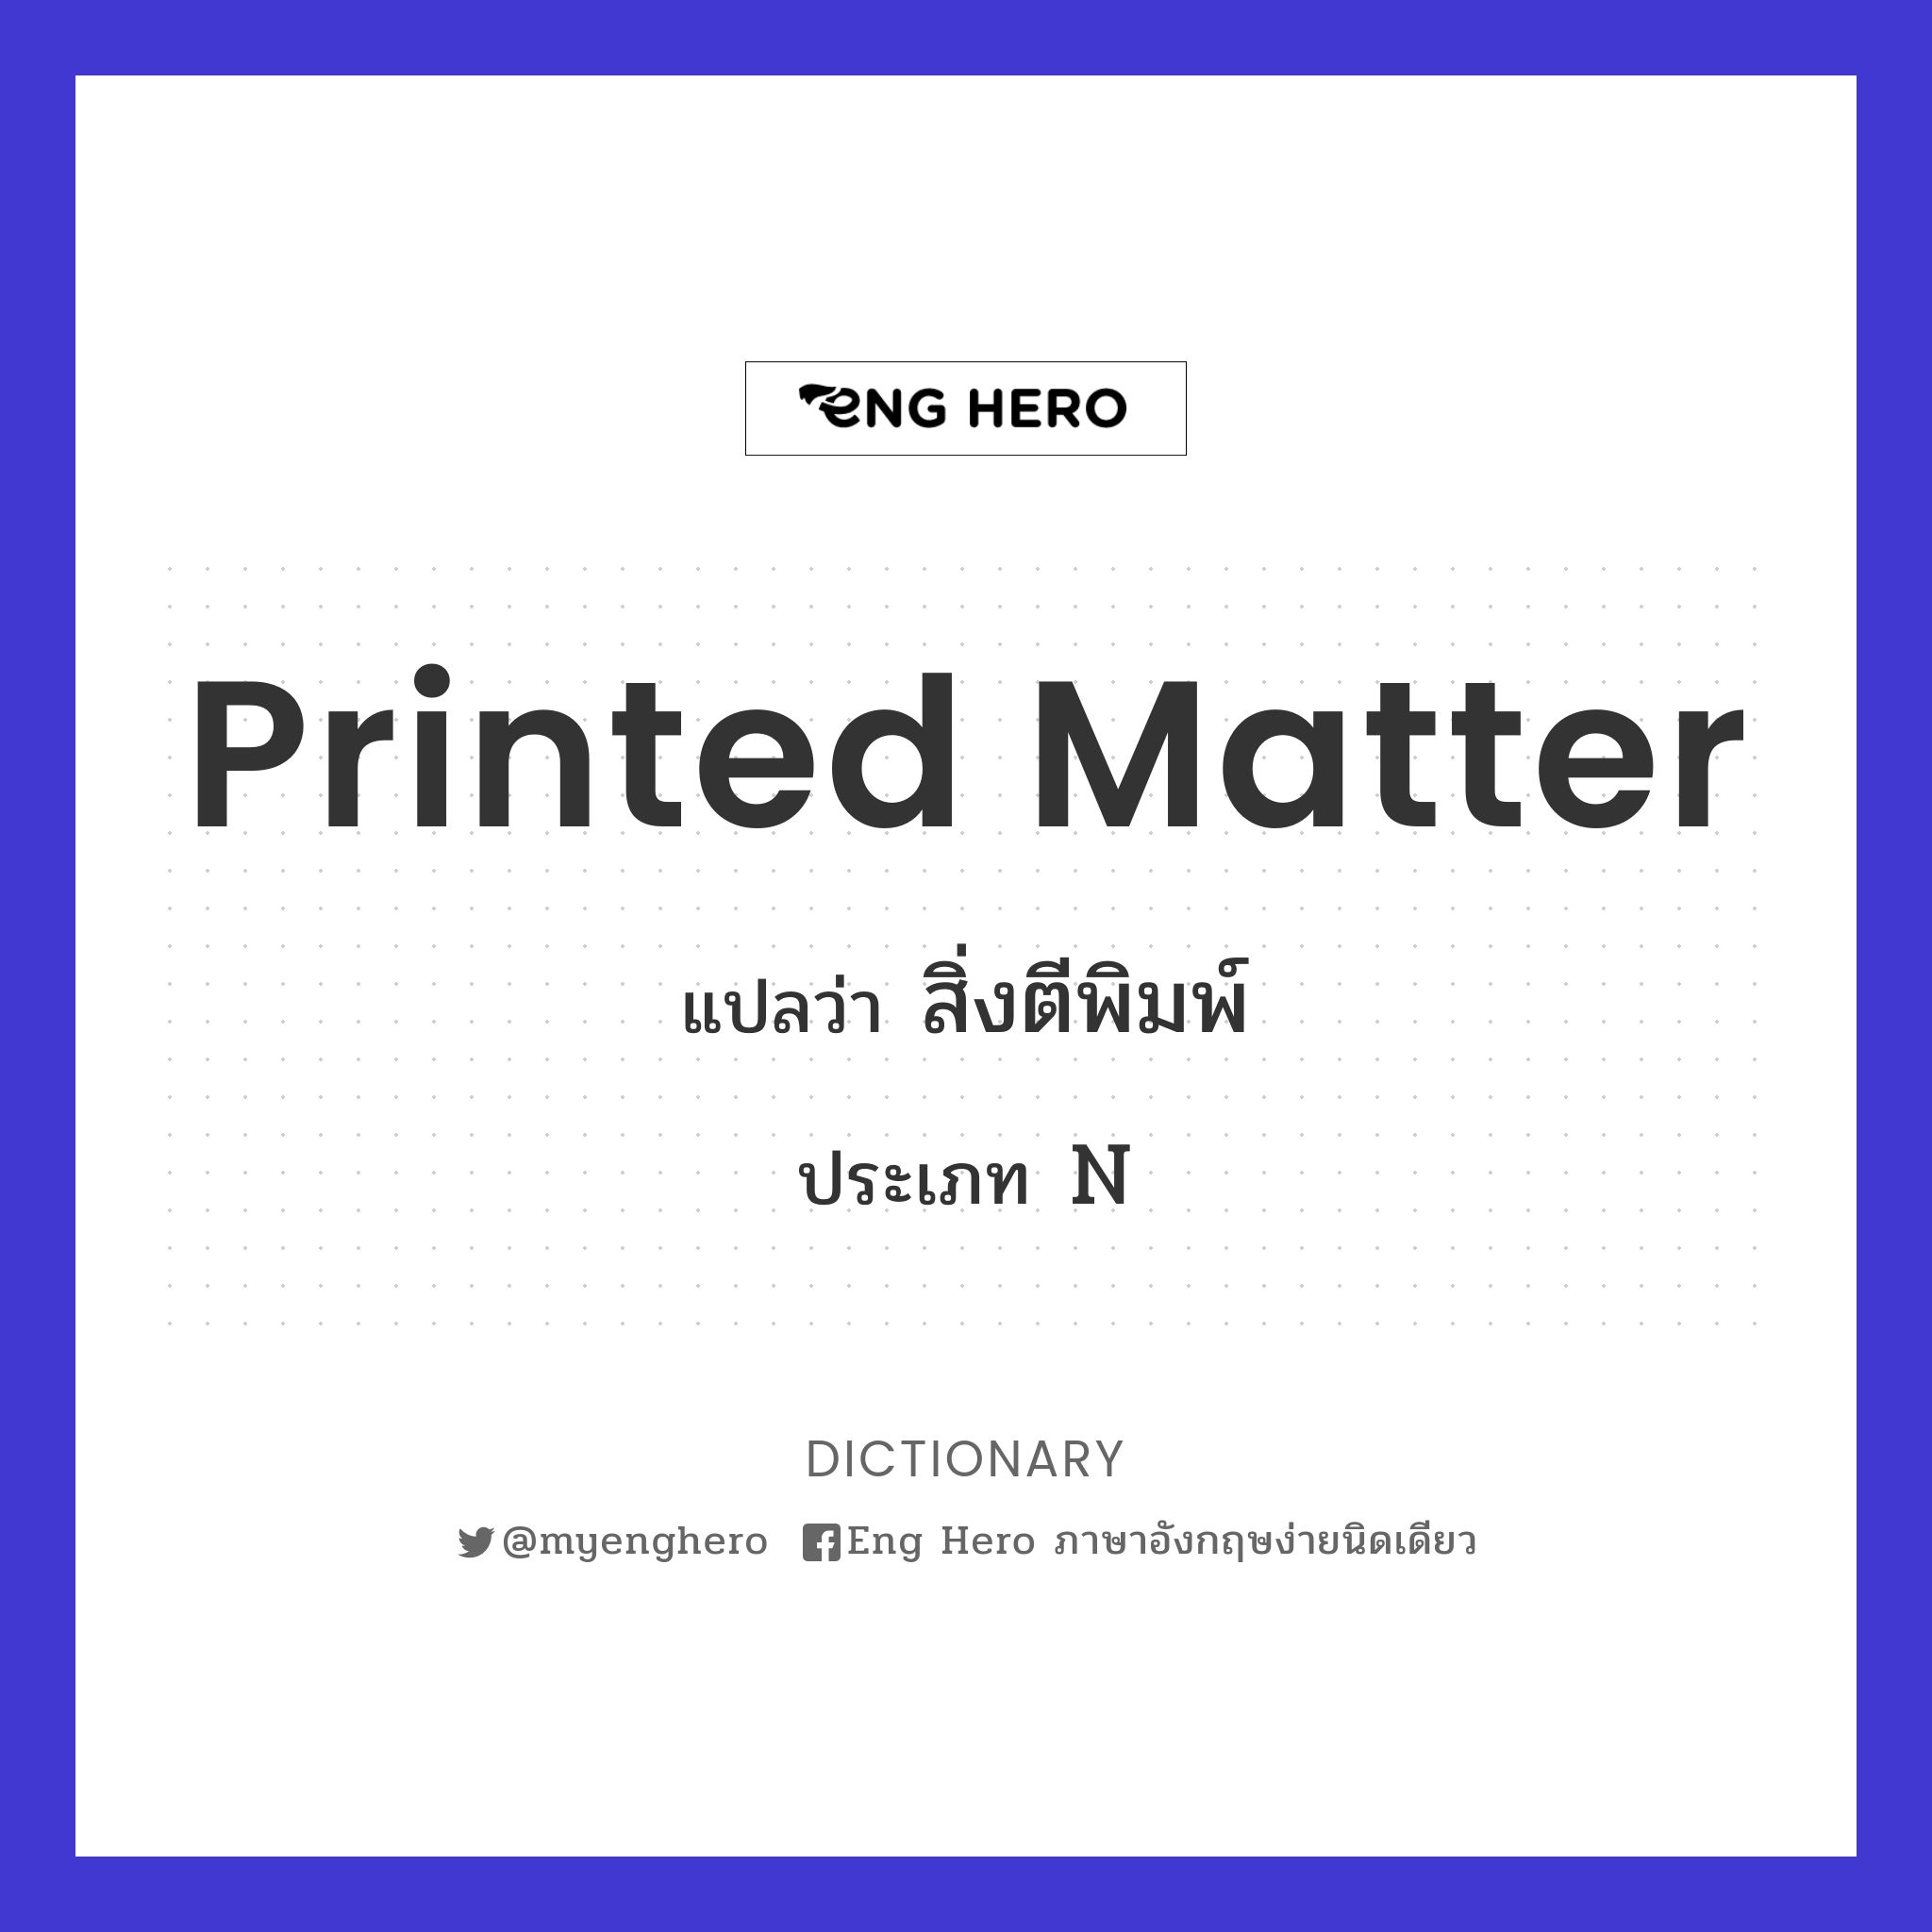 printed matter